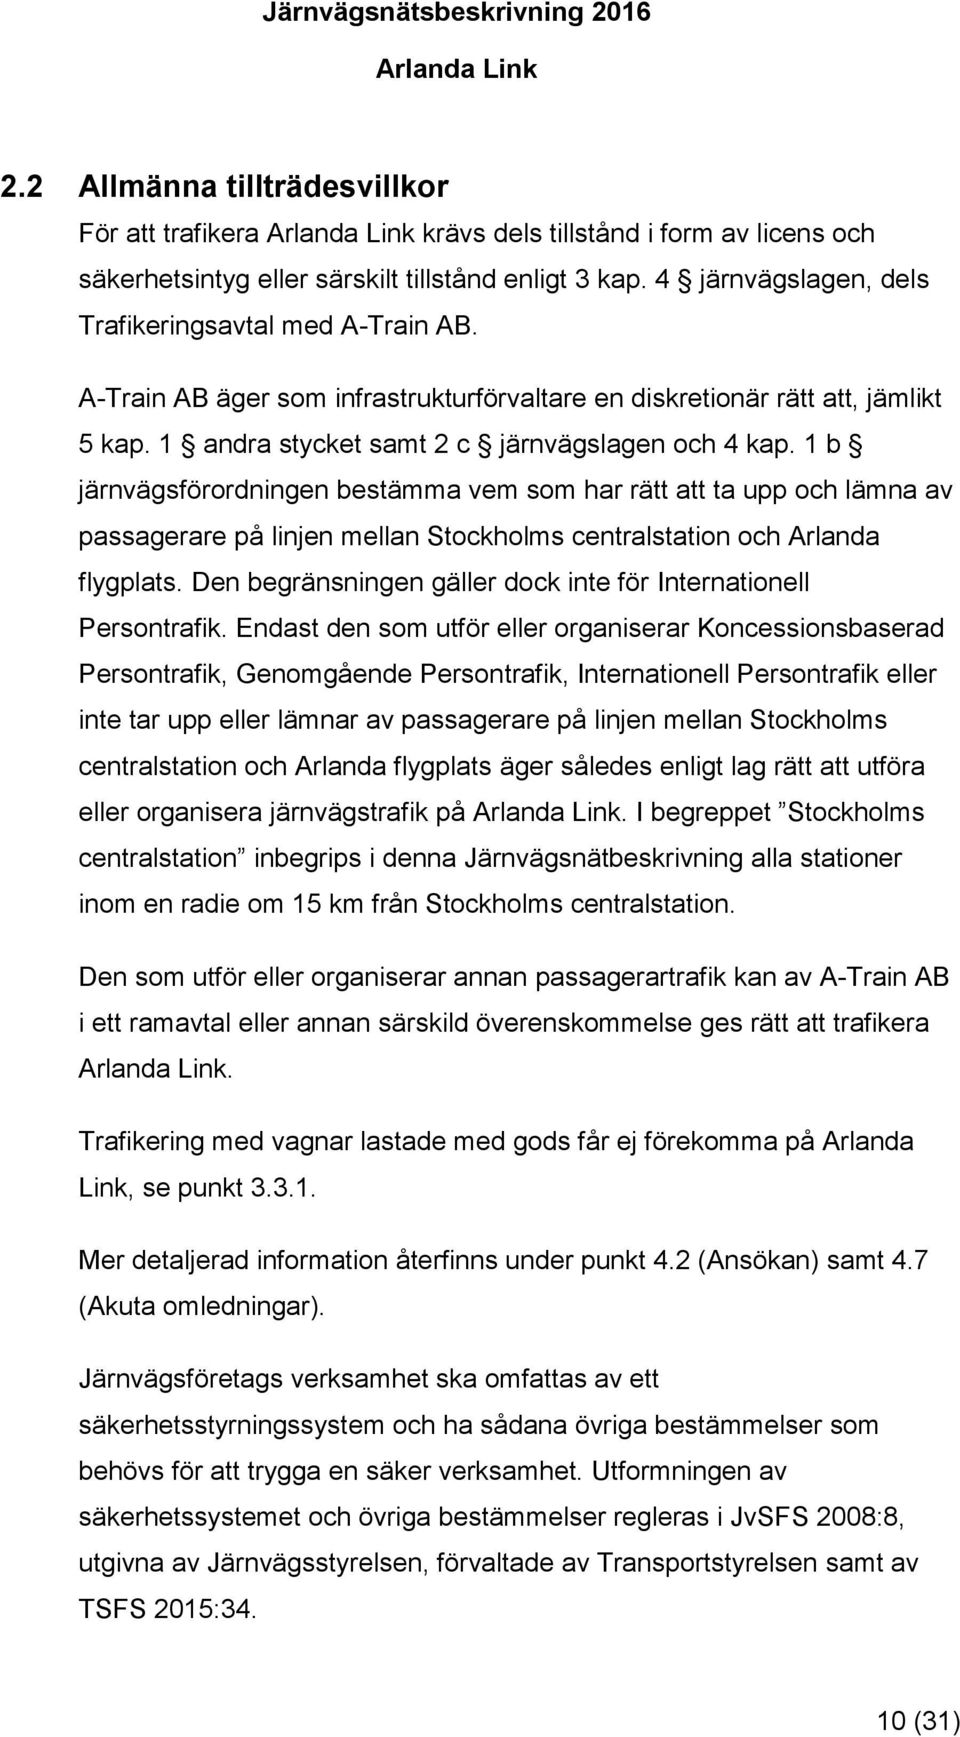 1 b järnvägsförordningen bestämma vem som har rätt att ta upp och lämna av passagerare på linjen mellan Stockholms centralstation och Arlanda flygplats.